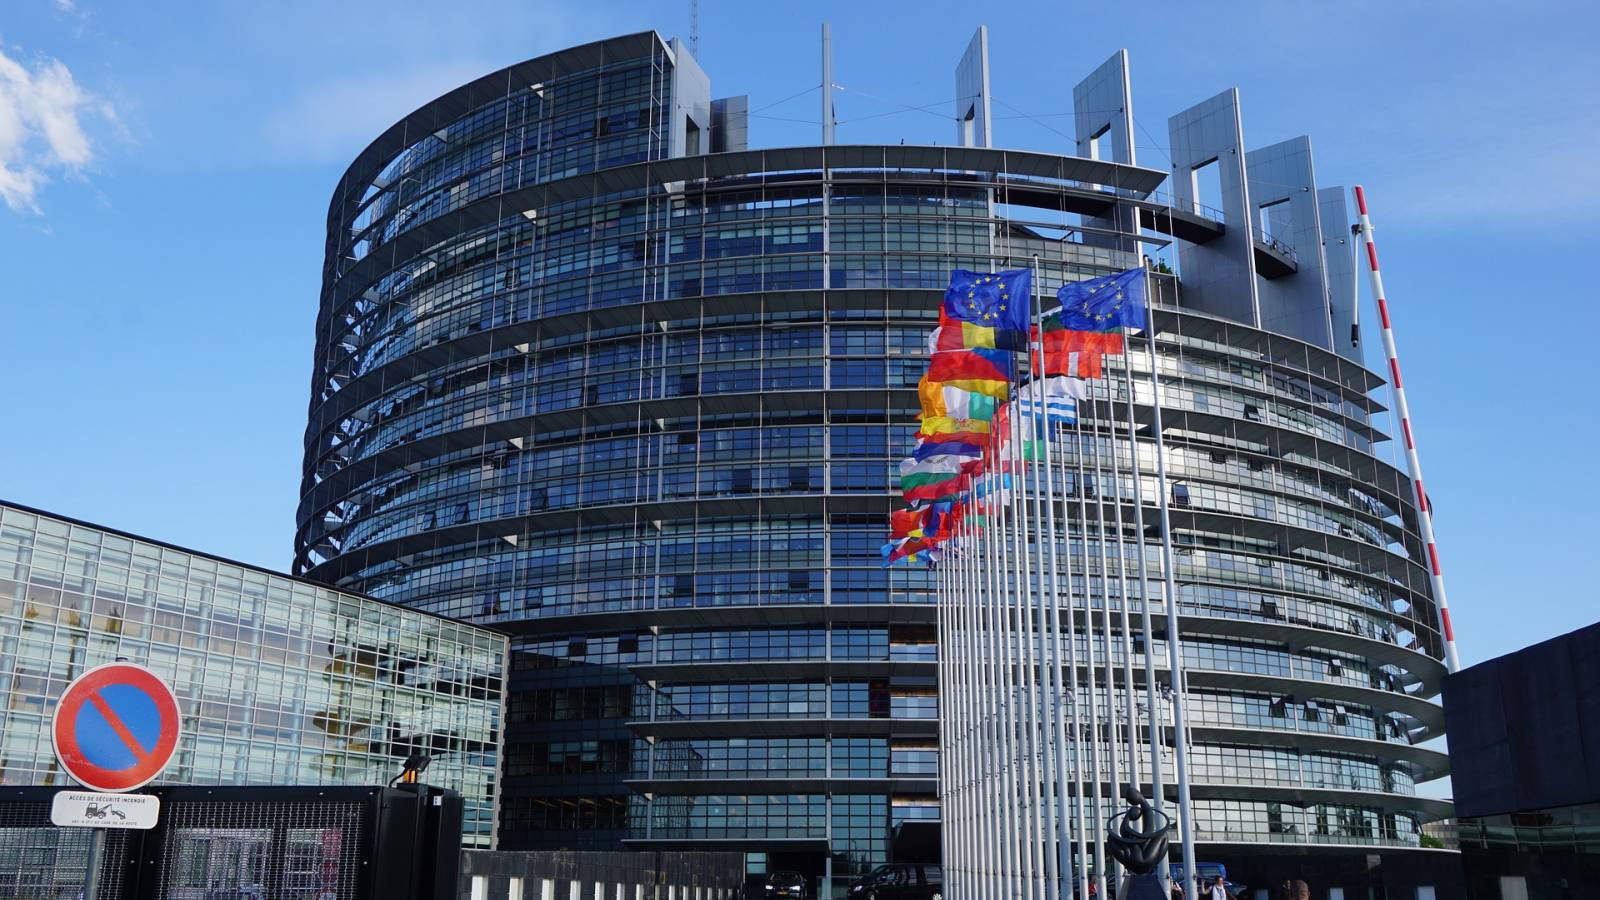 Parlamentul European Vrea Limite Stricte Emisiile CO2